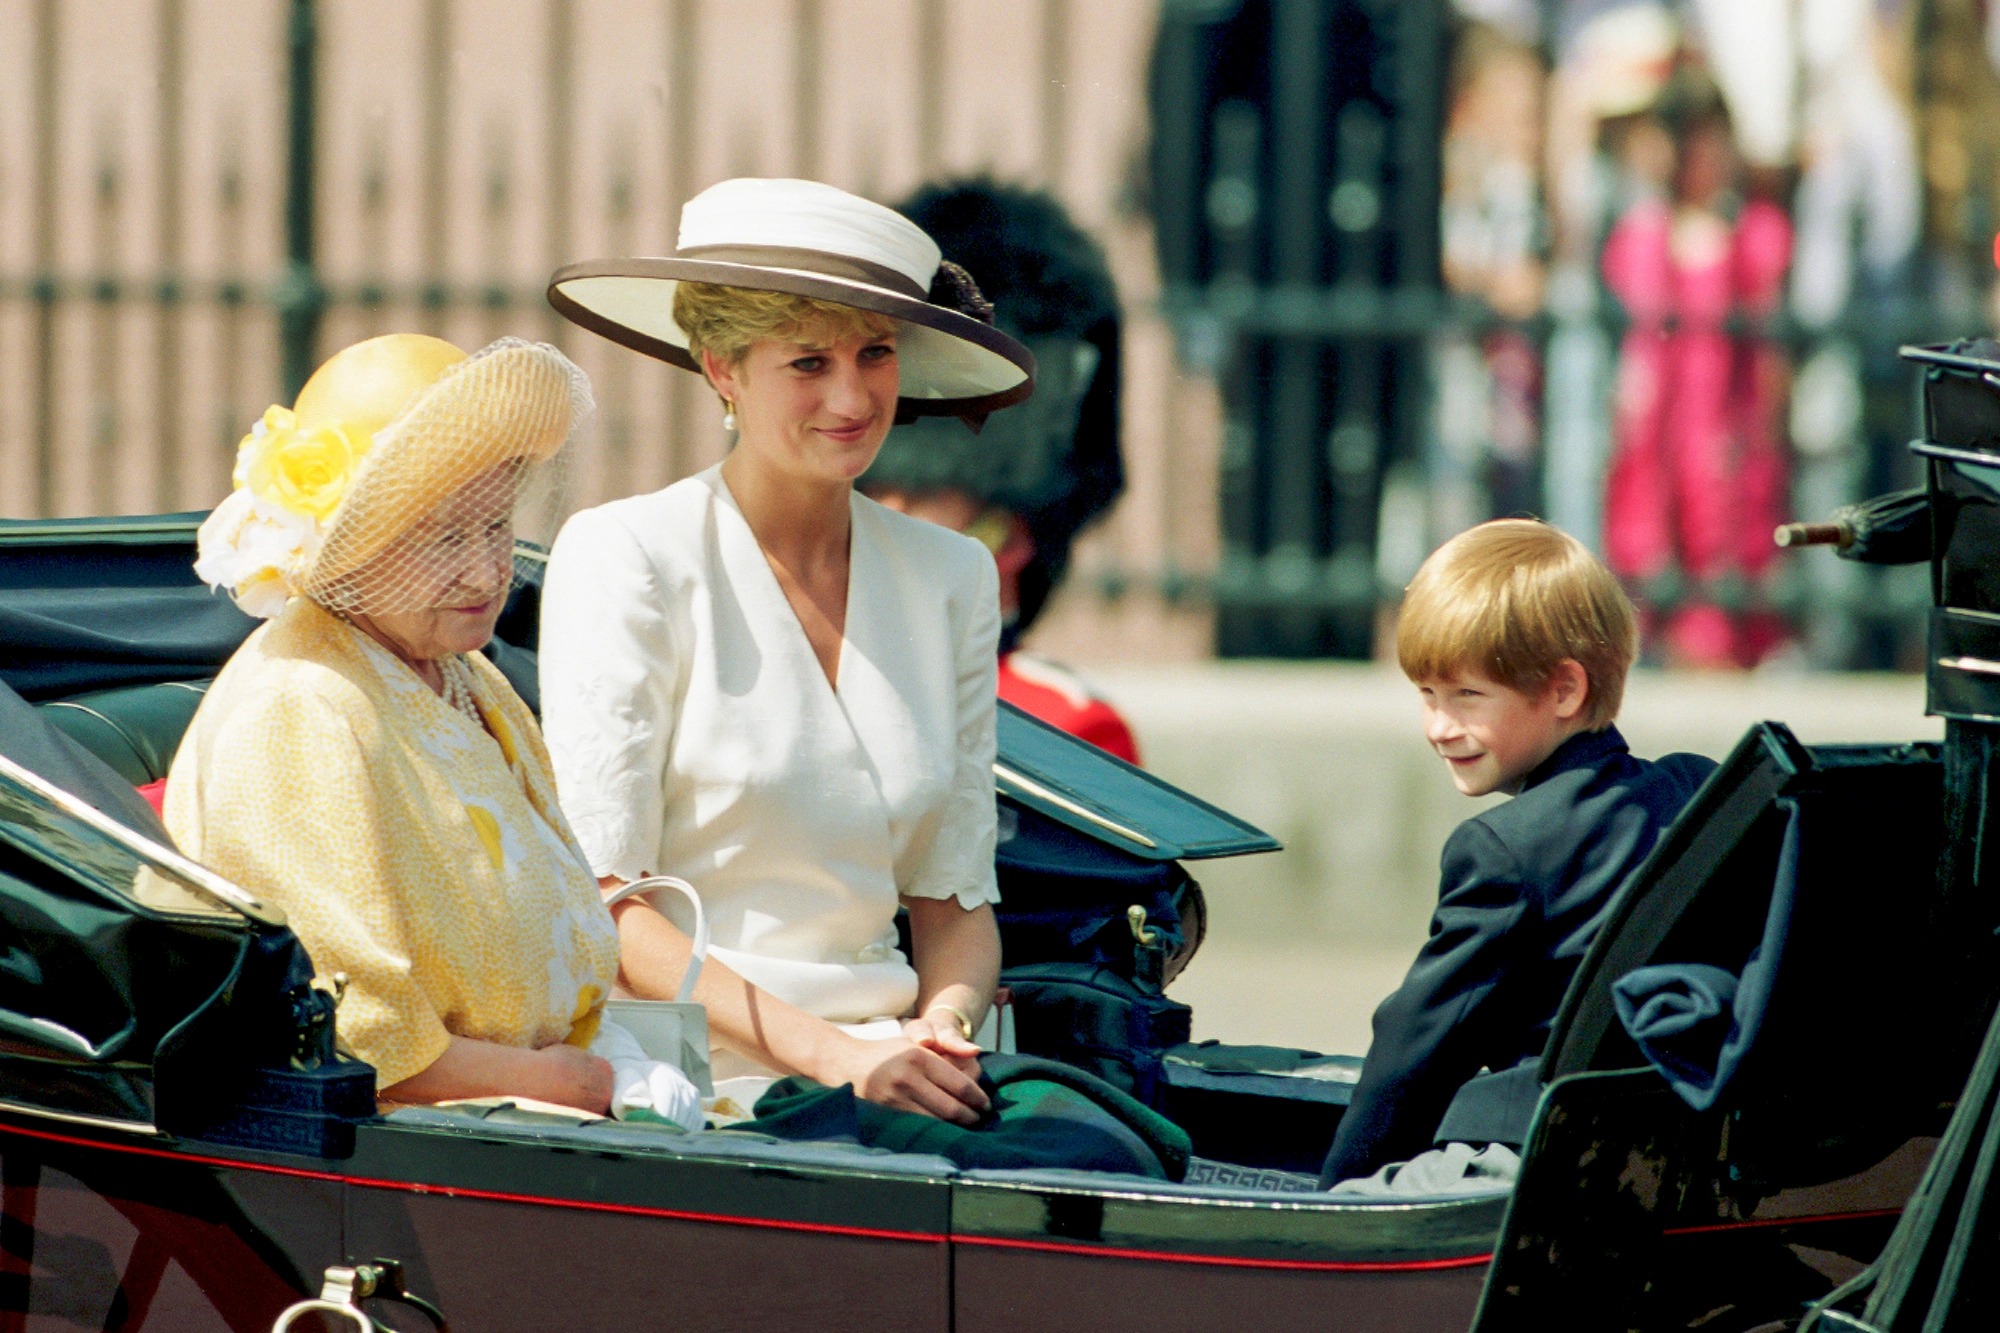 cong nuong diana credit UK Press Getty Images - “Ngả mũ” trước cách chọn đồ tinh tế của Công nương Kate Middleton xuyên suốt Đại lễ Bạch Kim